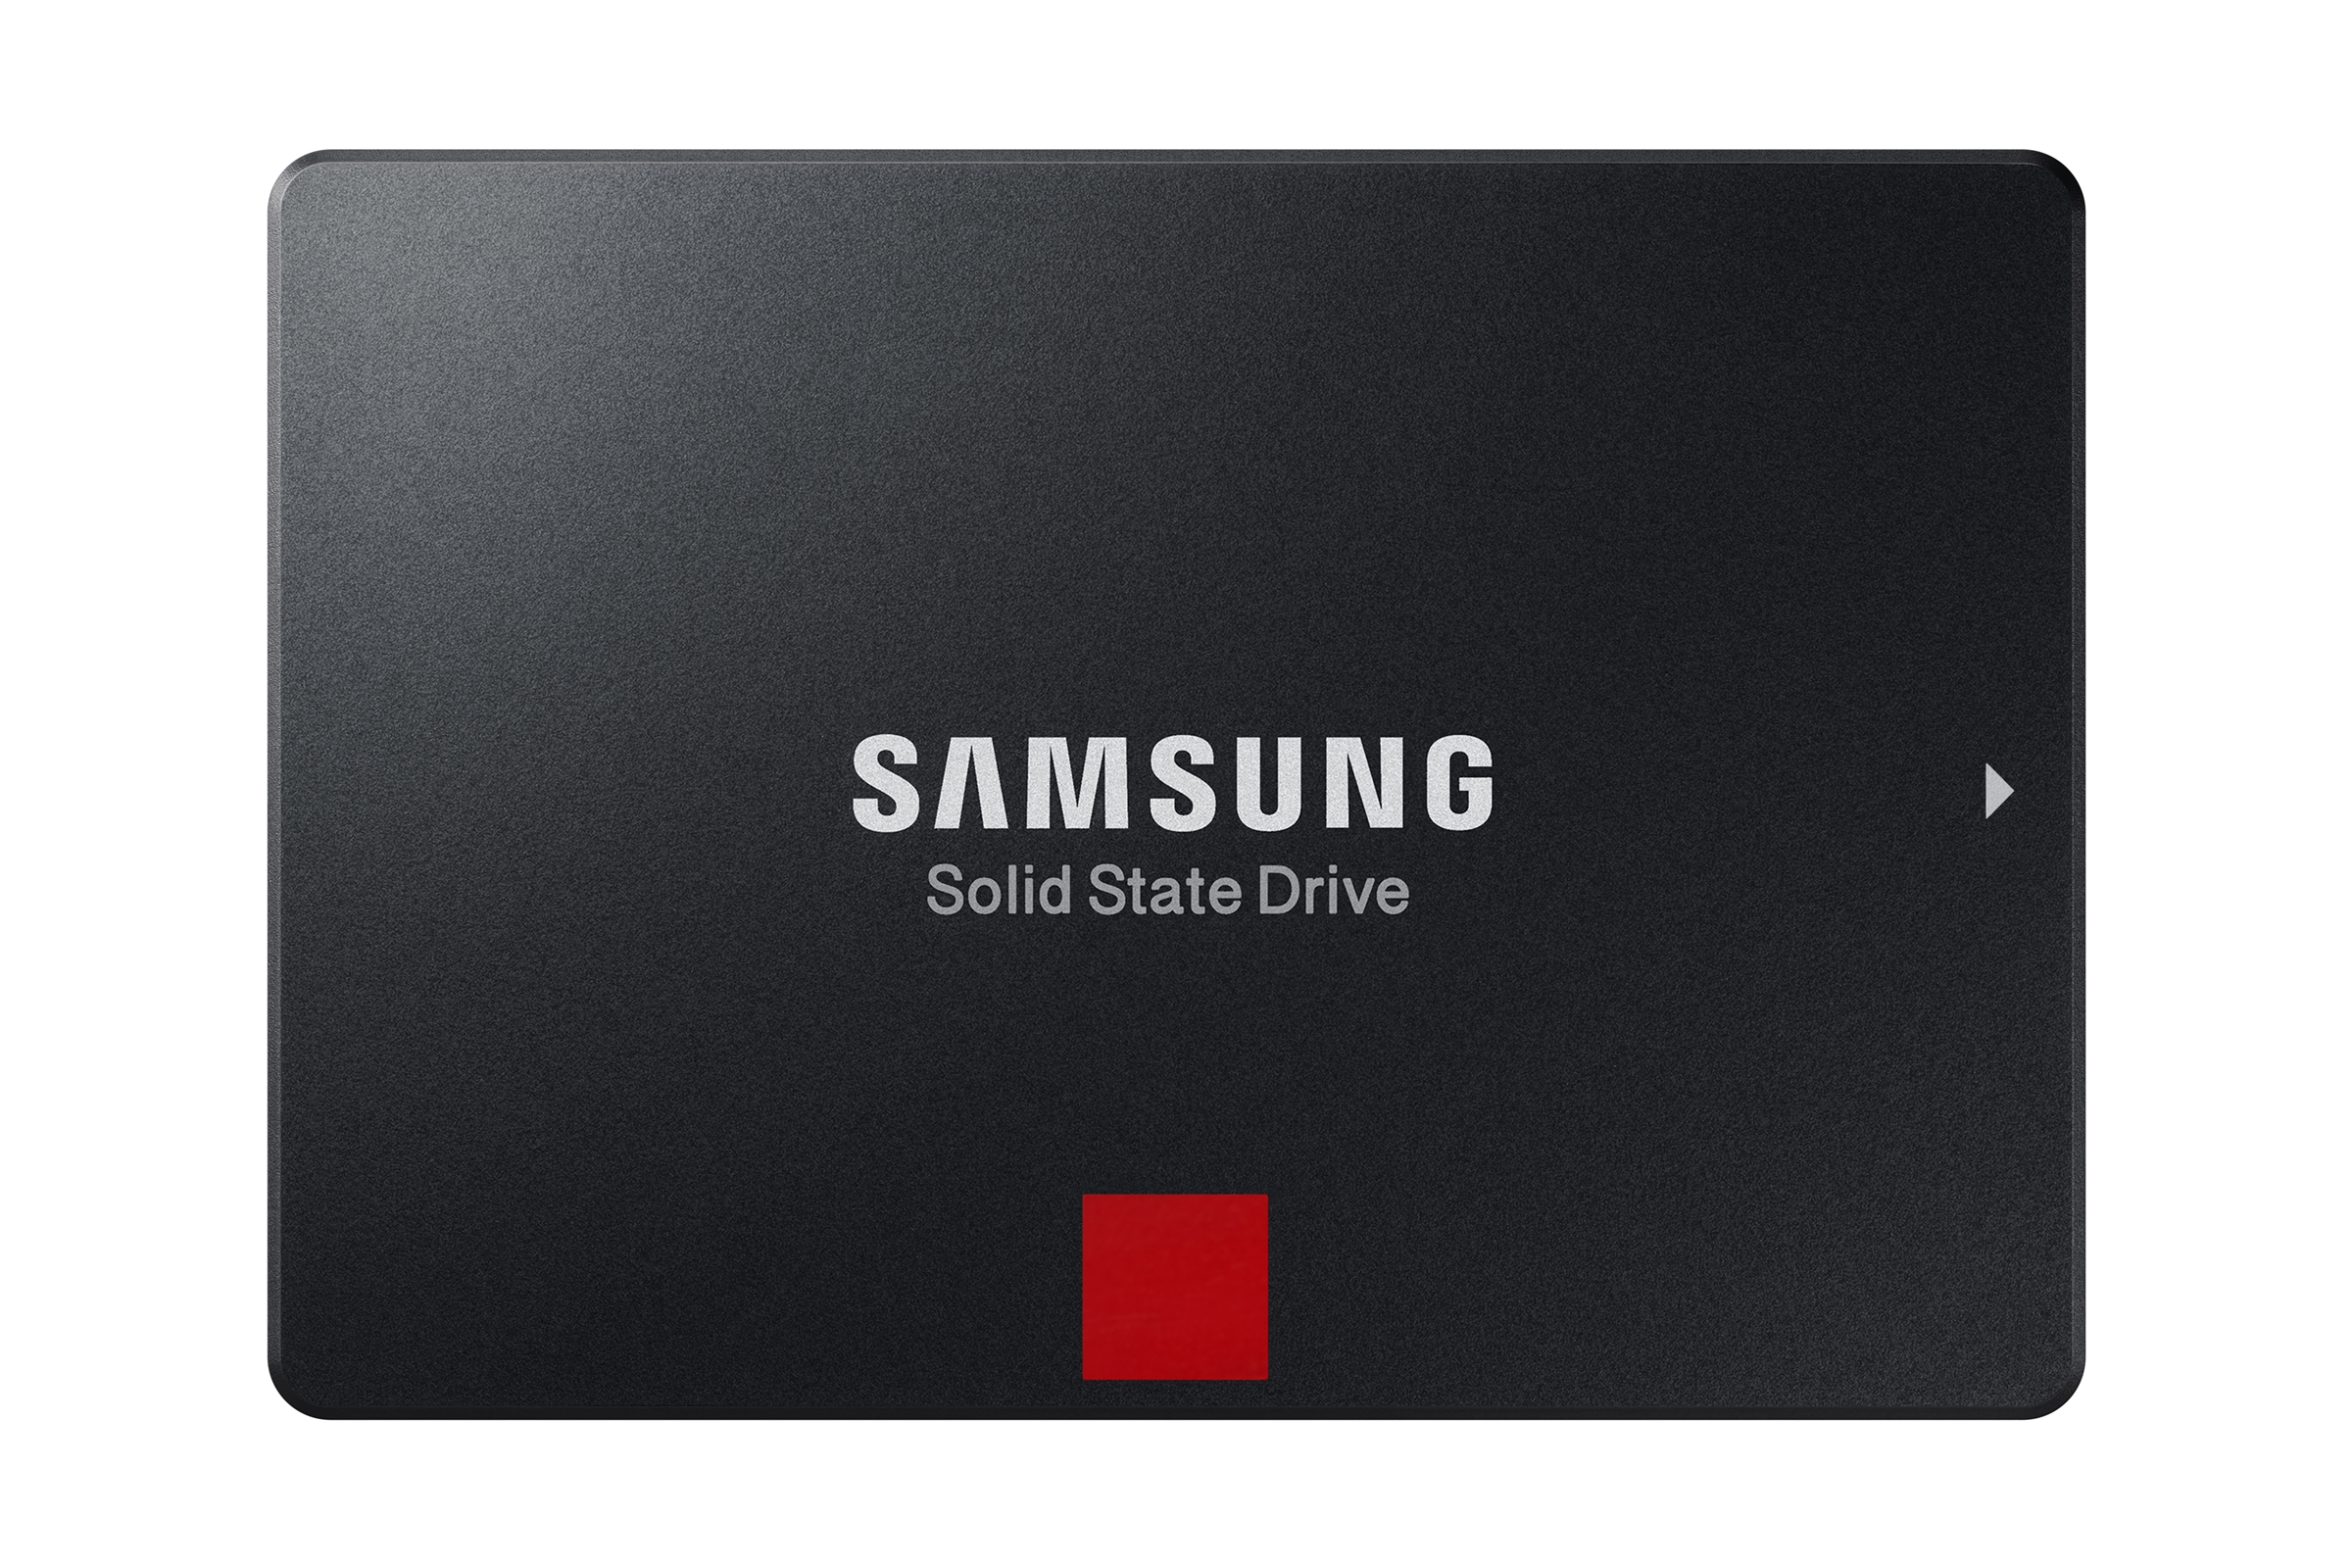 Immagine pubblicata in relazione al seguente contenuto: Samsung lancia ufficialmente le linee di drive SSD 860 Pro e 860 EVO | Nome immagine: news27753_Samsung-860-Pro-860-EVO_5.jpg